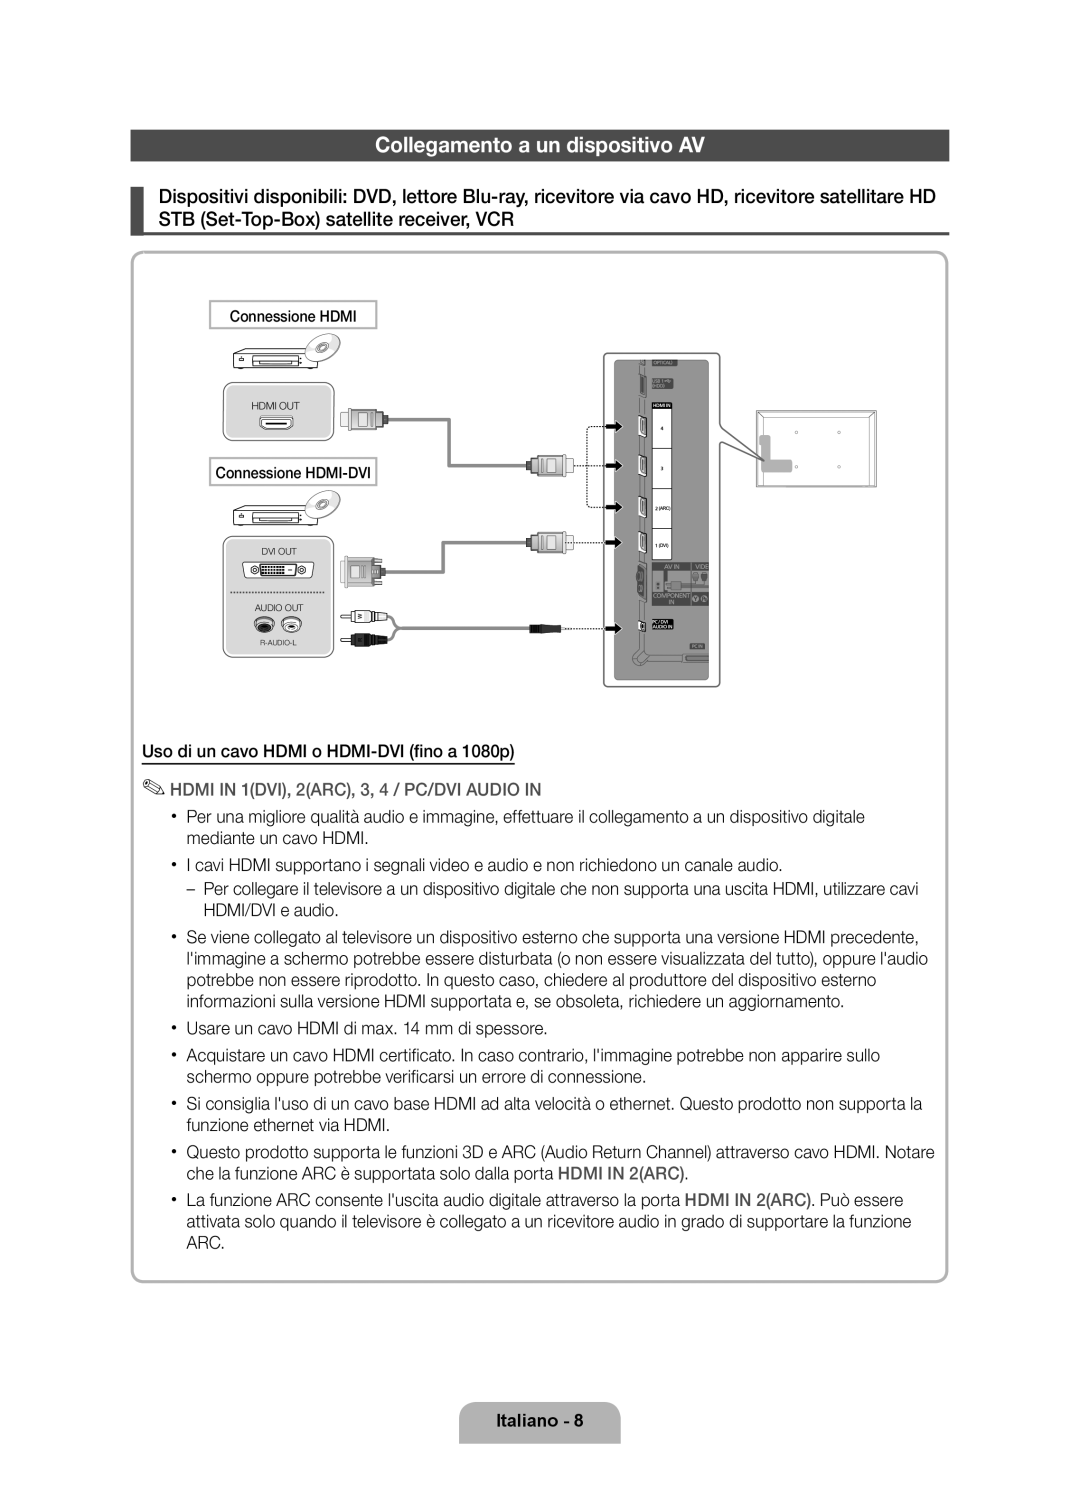 Samsung UE32D6000TPXZT manual Collegamento a un dispositivo AV, HDMI IN 1DVI, 2ARC, 3, 4 / PC/DVI AUDIO IN, Italiano 